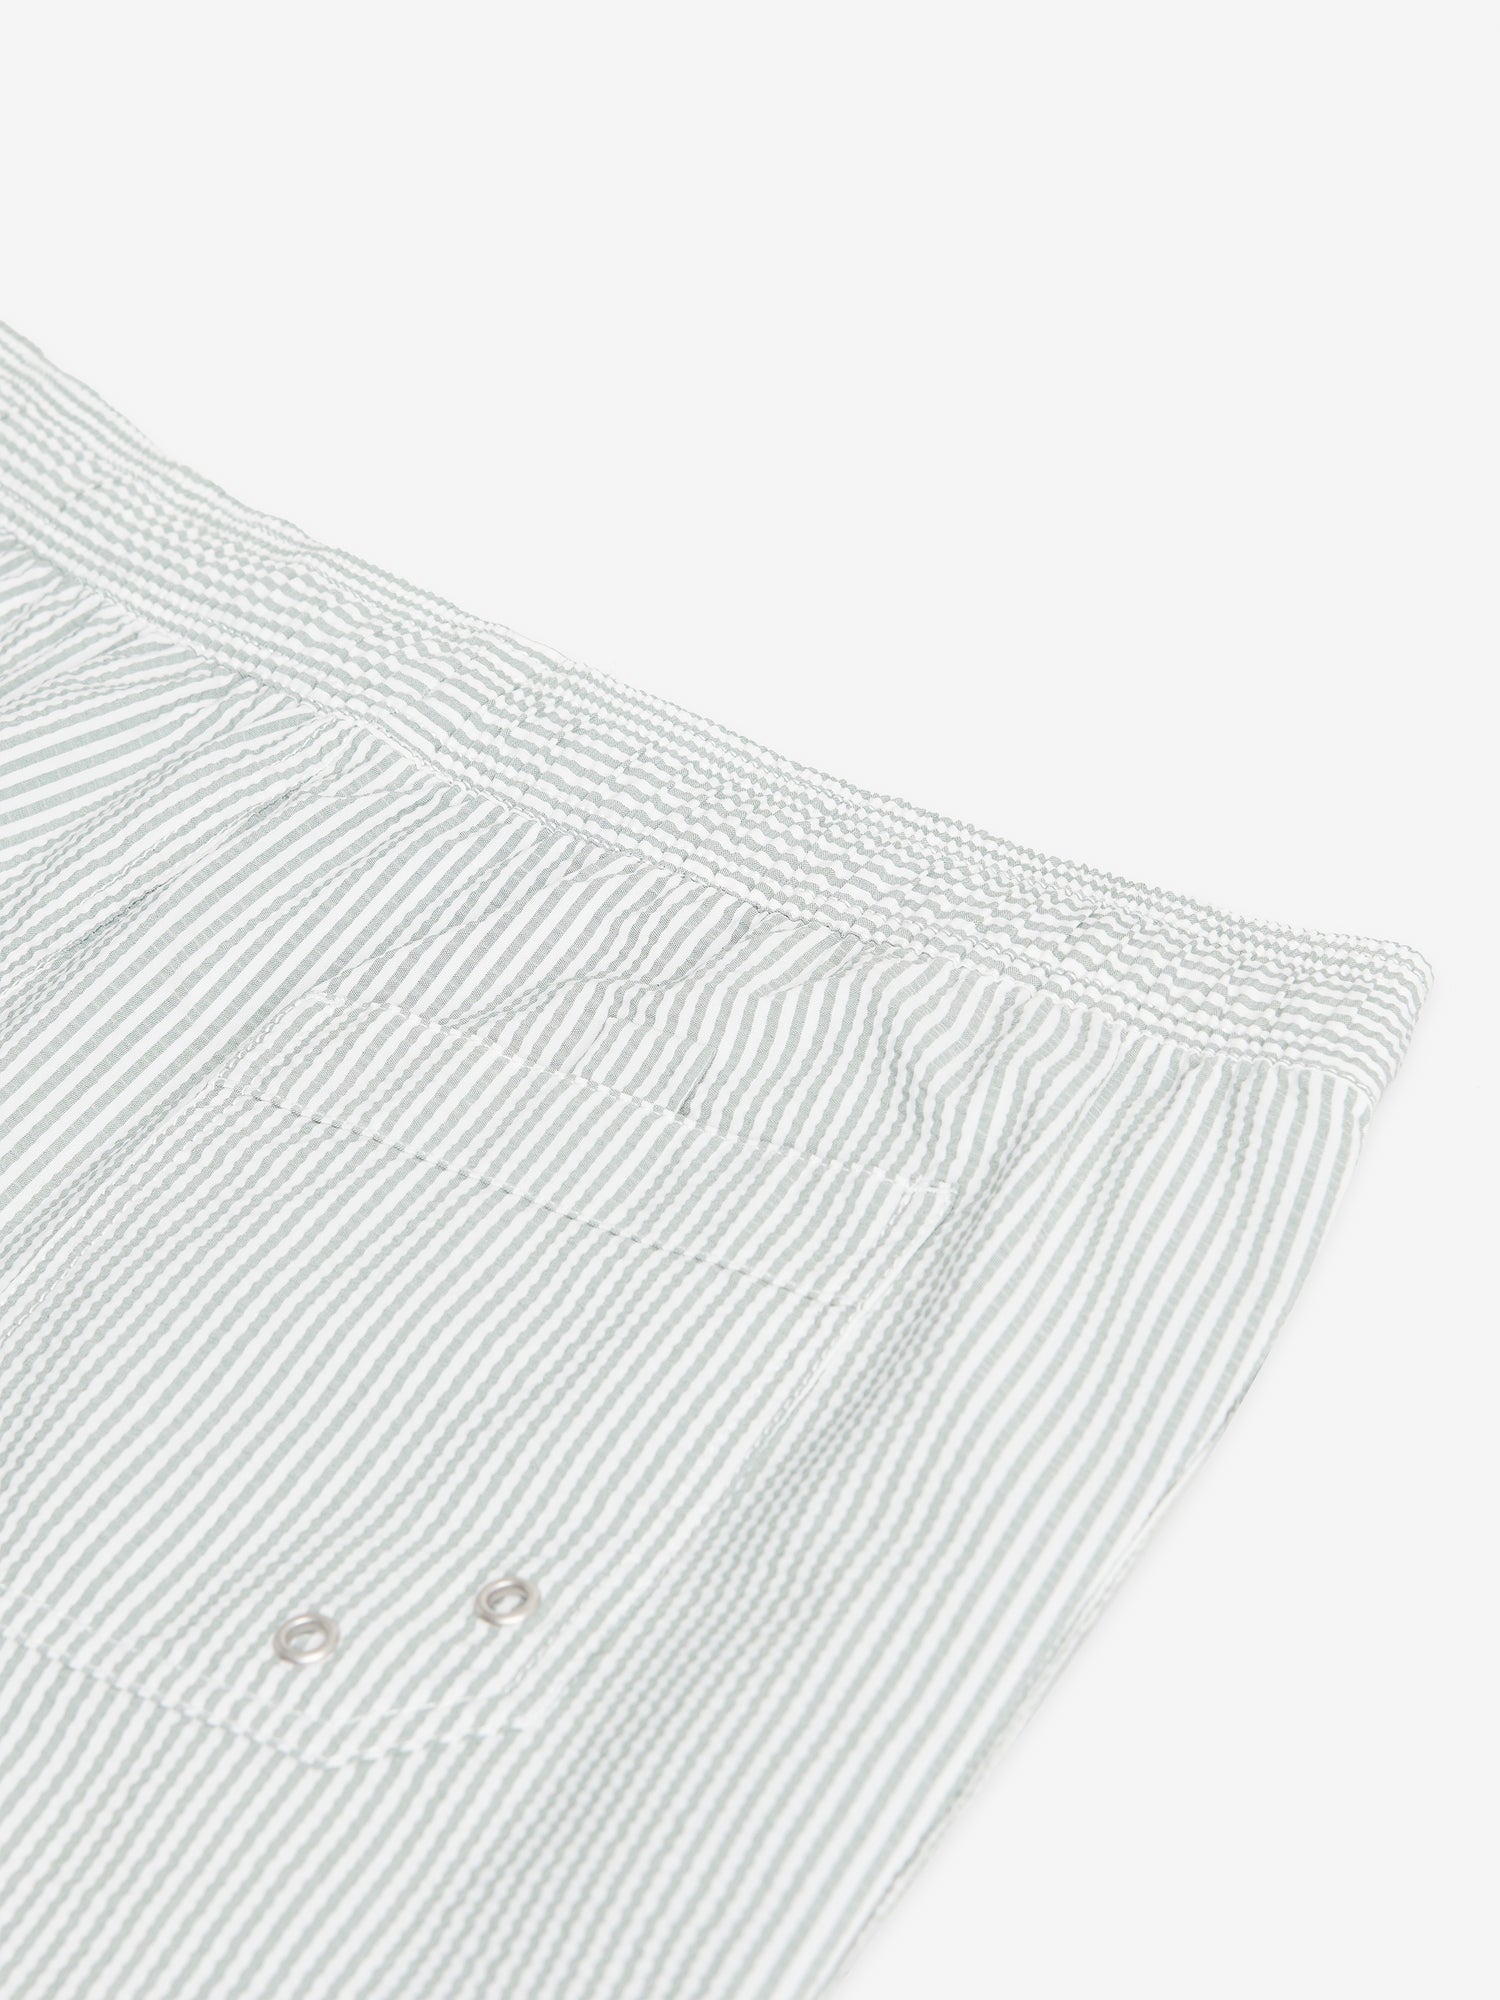 Venice Seersucker Cotton-Polyester SW00024-SAG